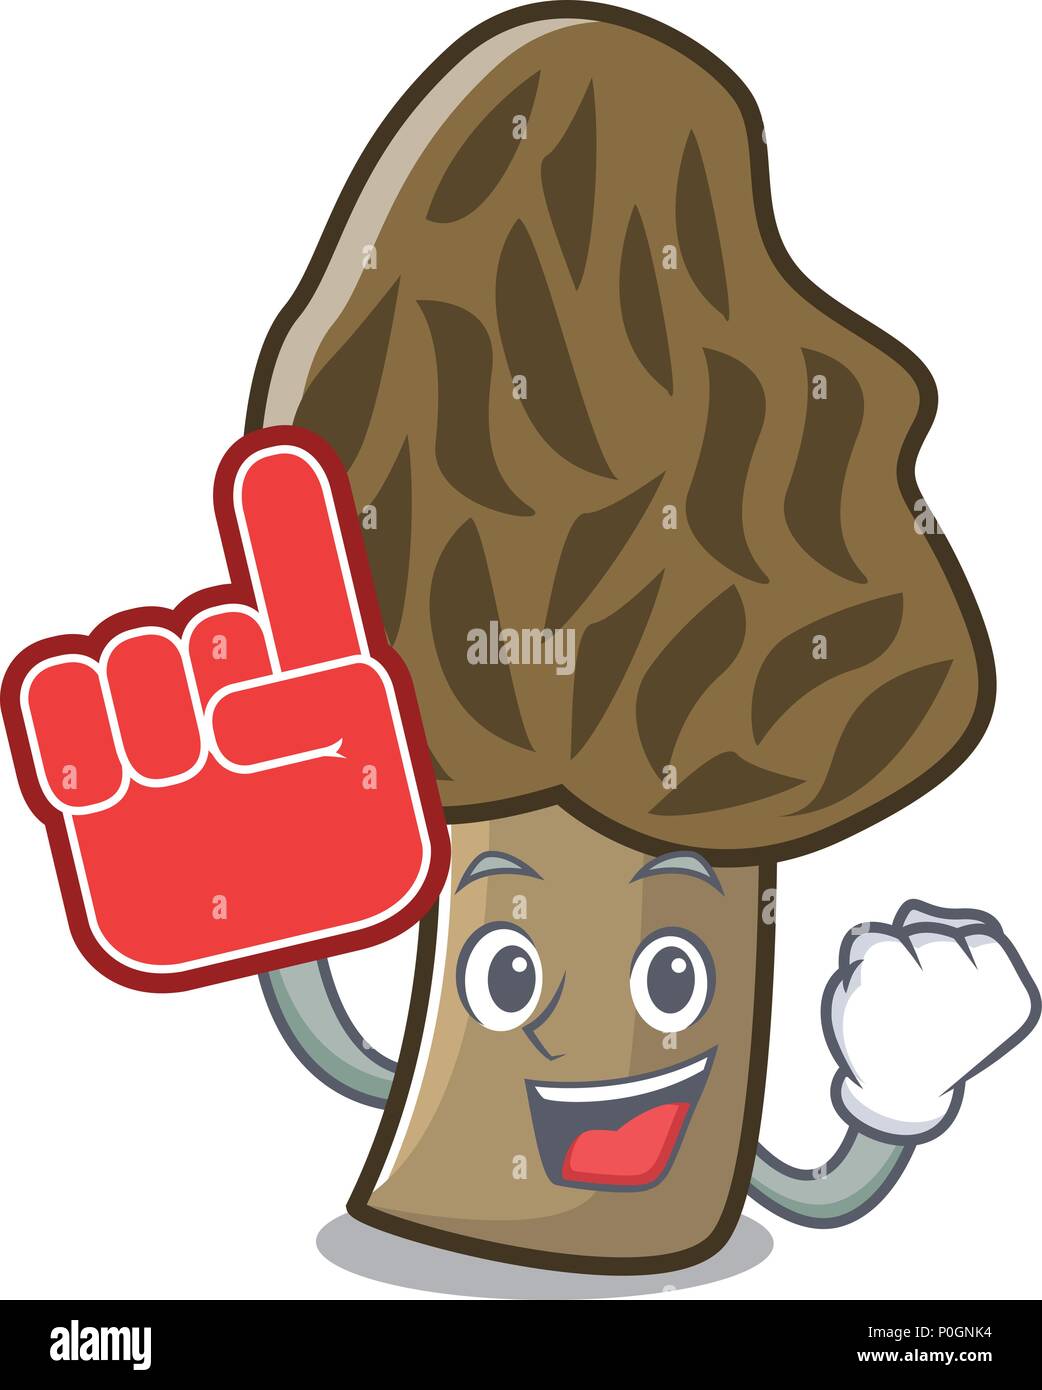 Foam finger morel mushroom mascot cartoon Stock Vector